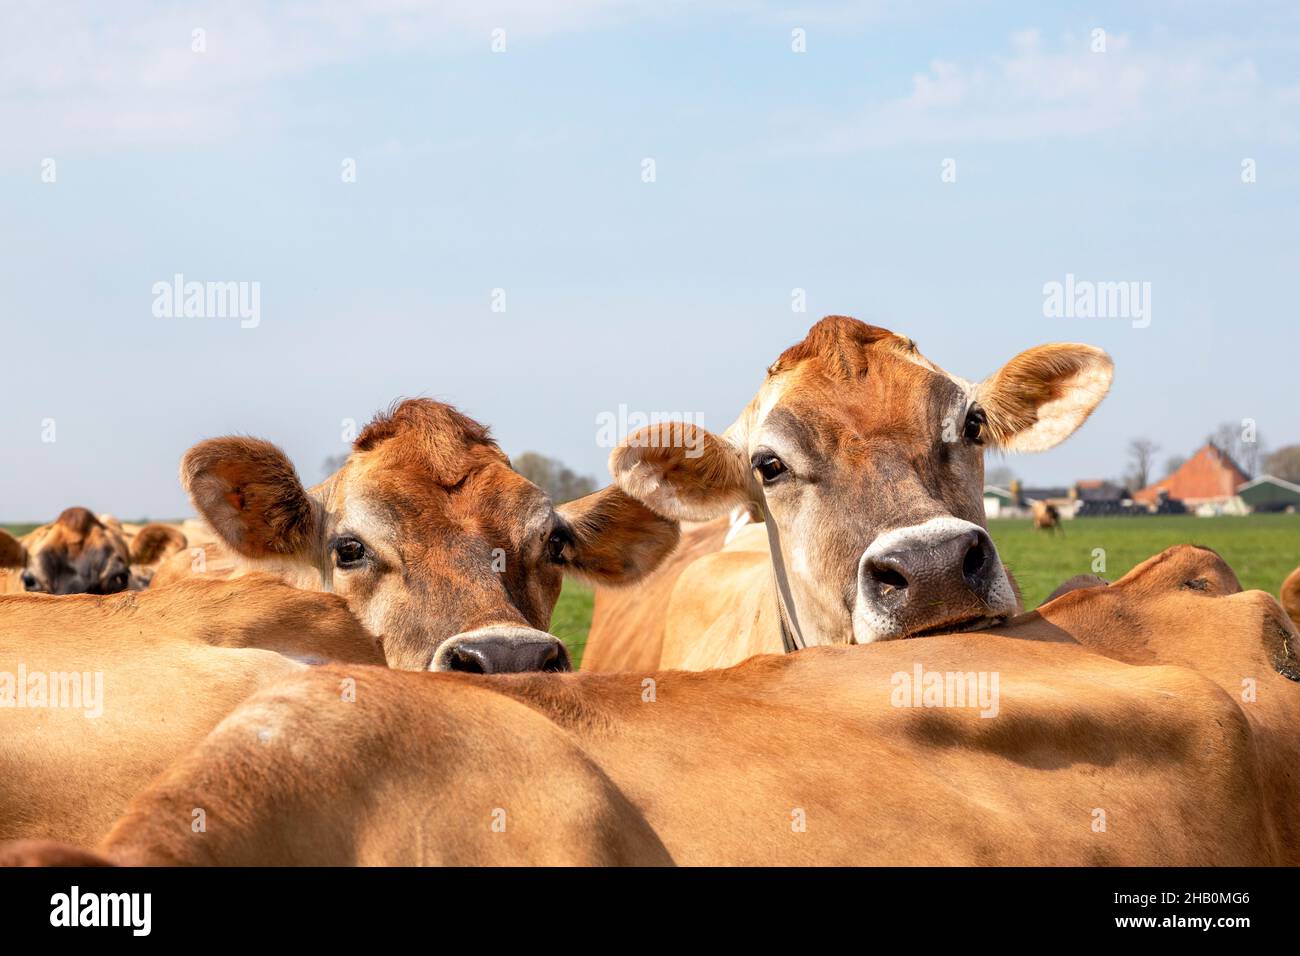 Jersey vacas nosey cabezas mirando sobre la parte posterior de otra vaca, nariz negra de cerca Foto de stock